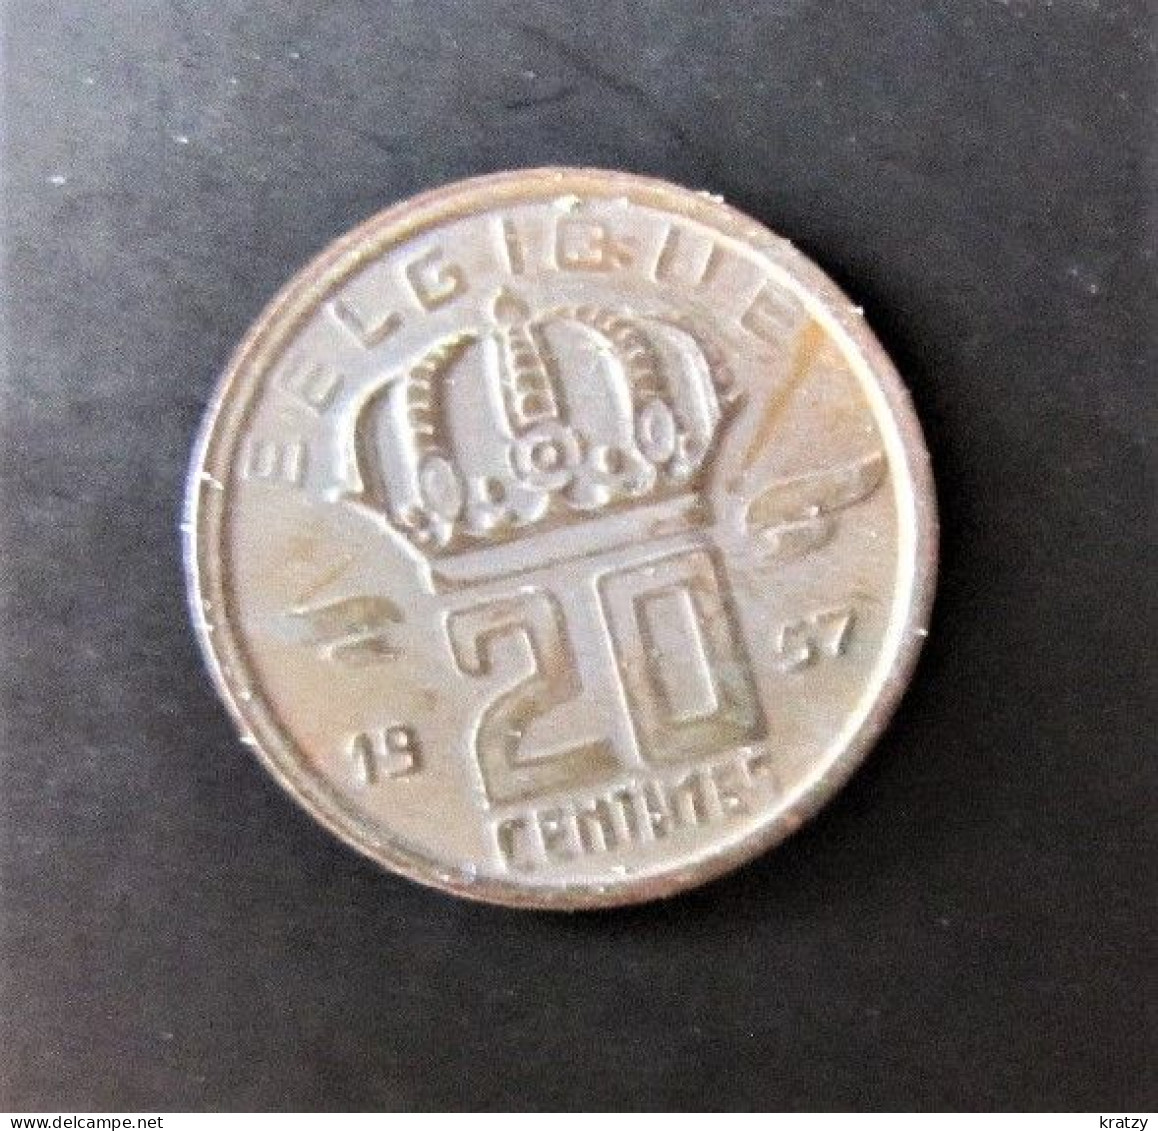 BELGIQUE - Pièce De 20 Centimes - Cuivre - 1957 - 20 Cents